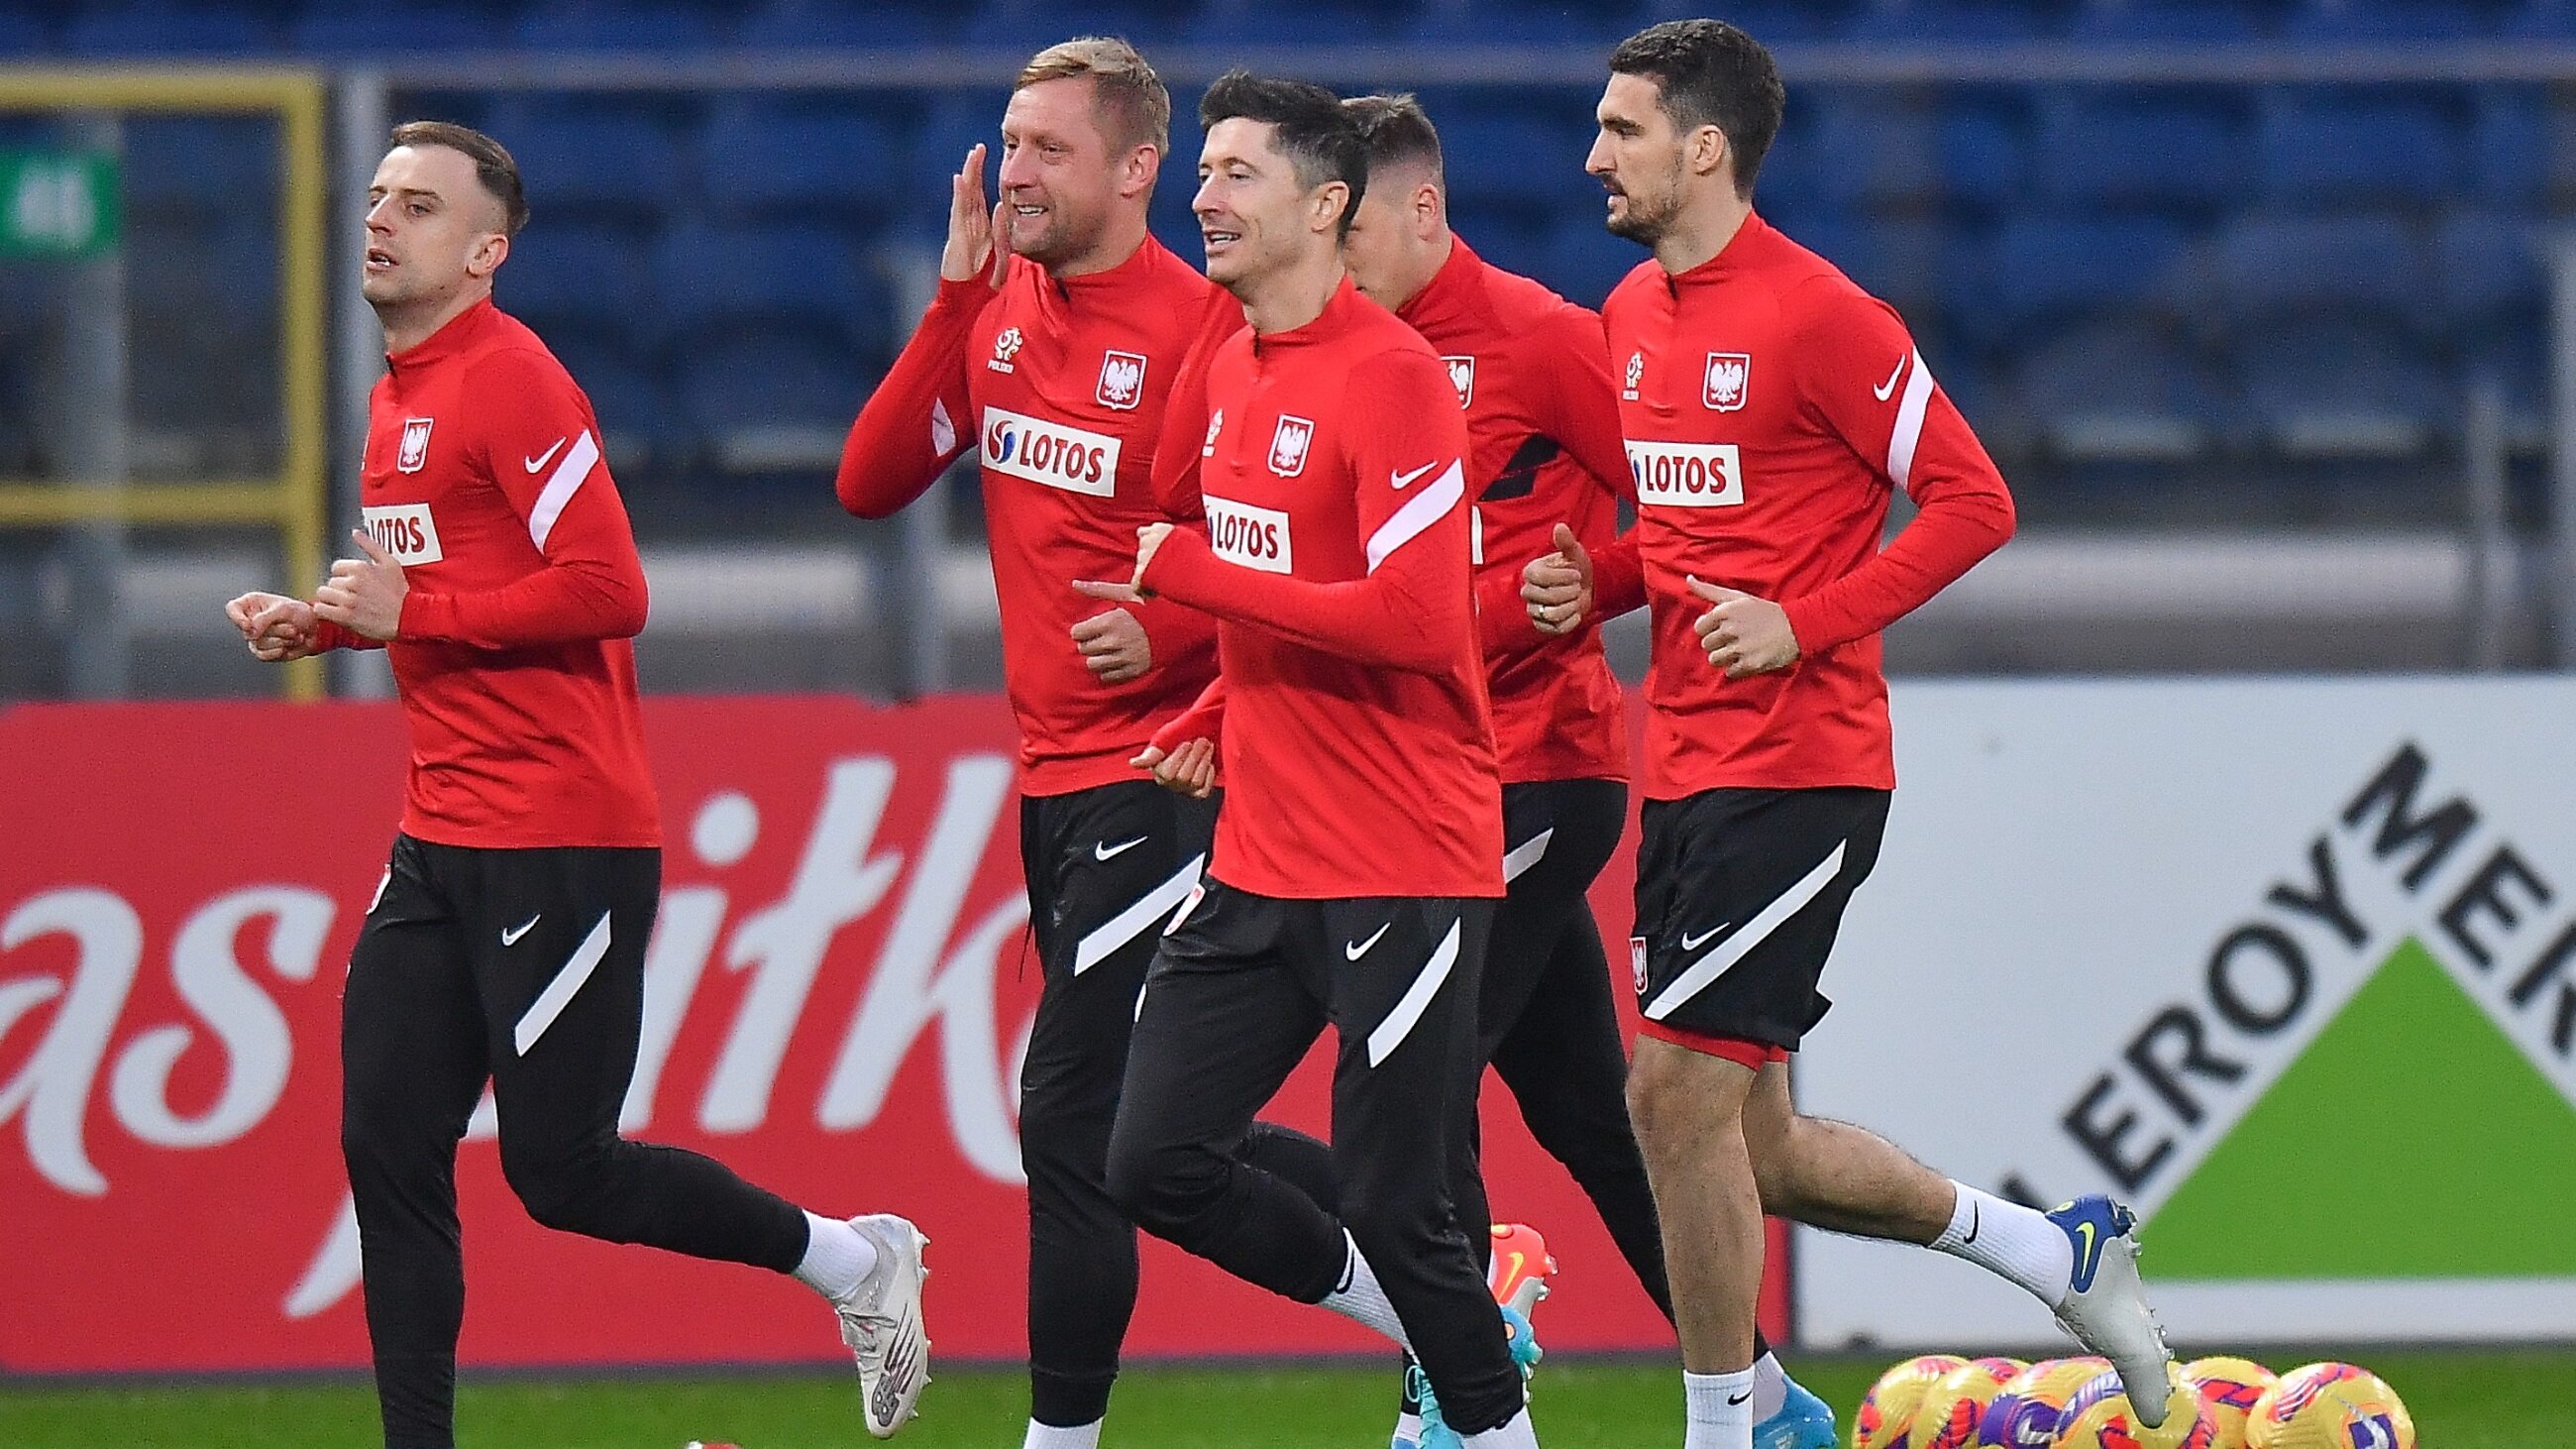 Etat de santé au tableau.  Lewandowski et Glik reprennent l’entraînement – Équipe de Pologne de football – Sport Wprost